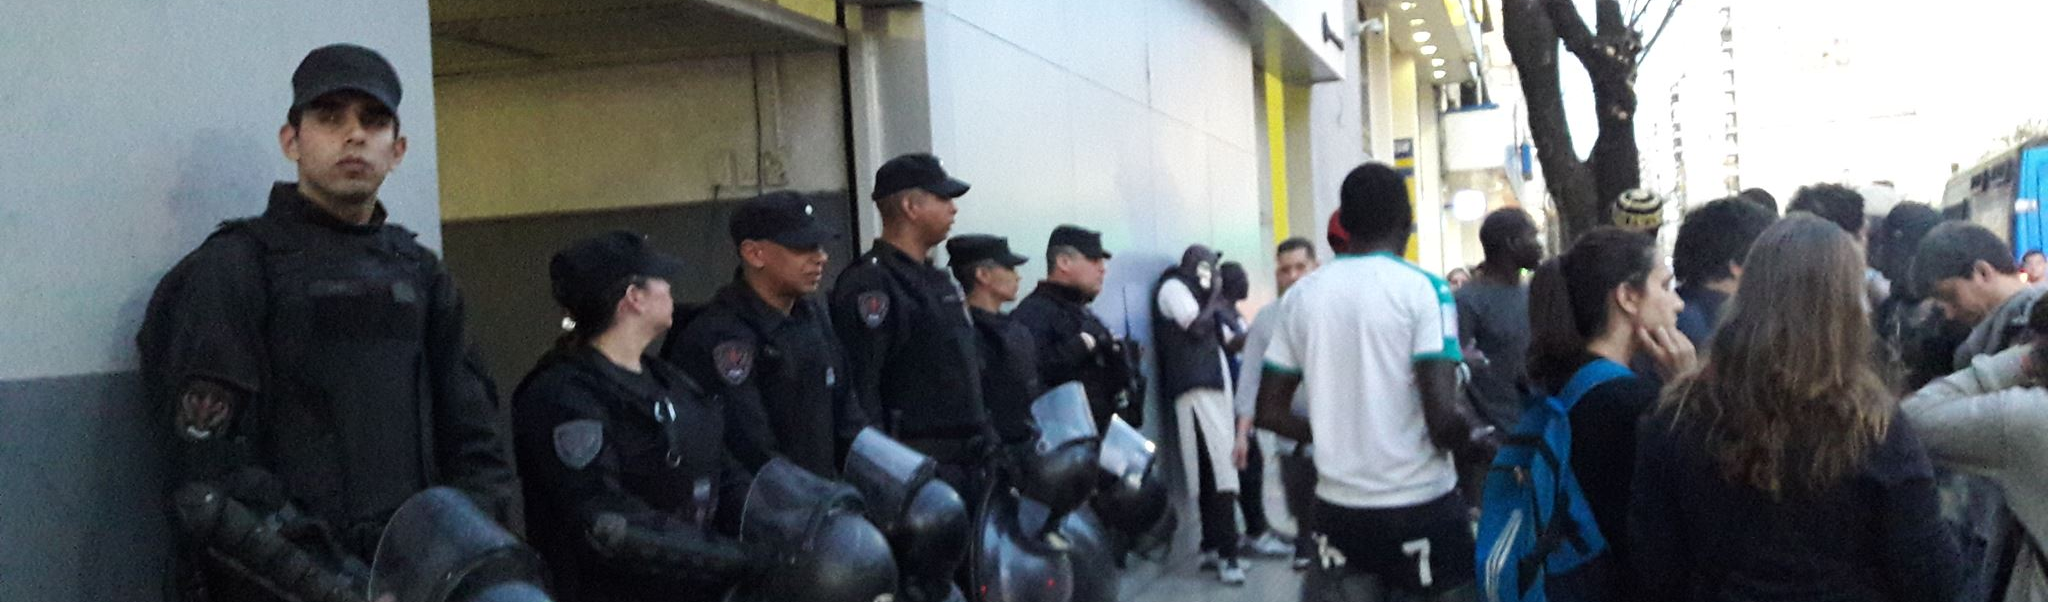 Clima de perseguição é denunciado na Argentina após prisão de imigrantes